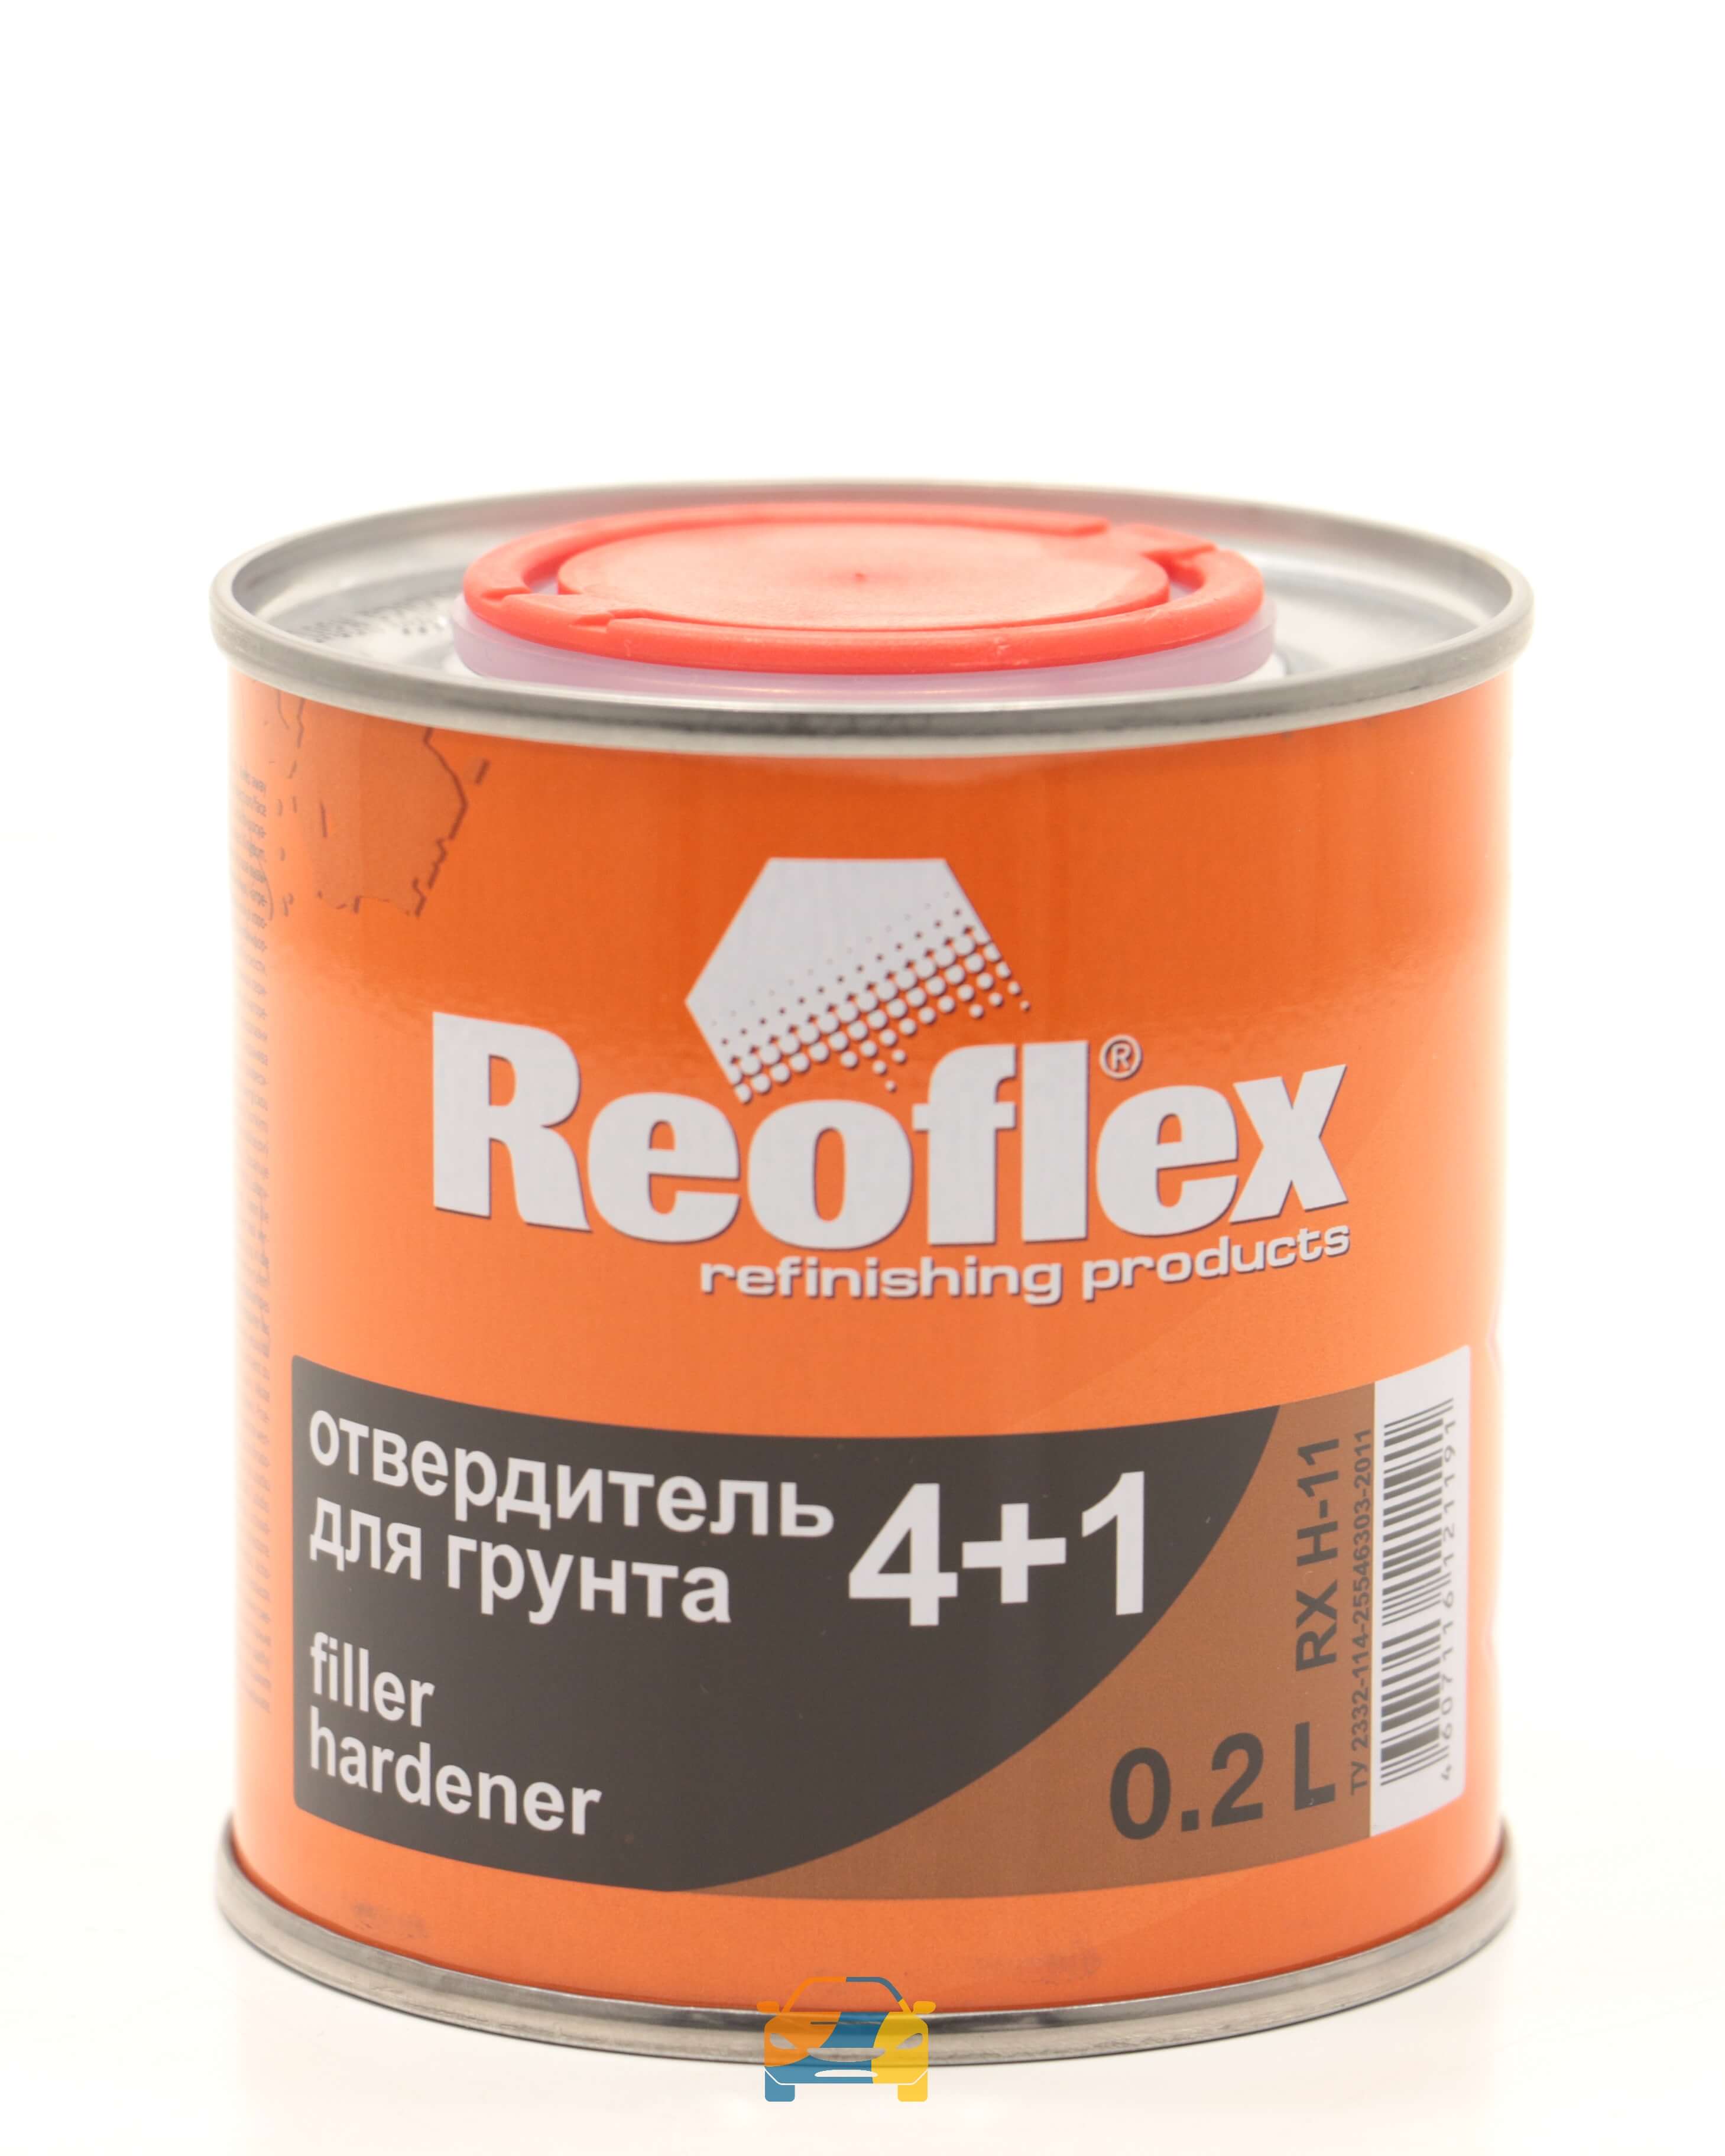 Отвердитель Reoflex для грунта 4+1